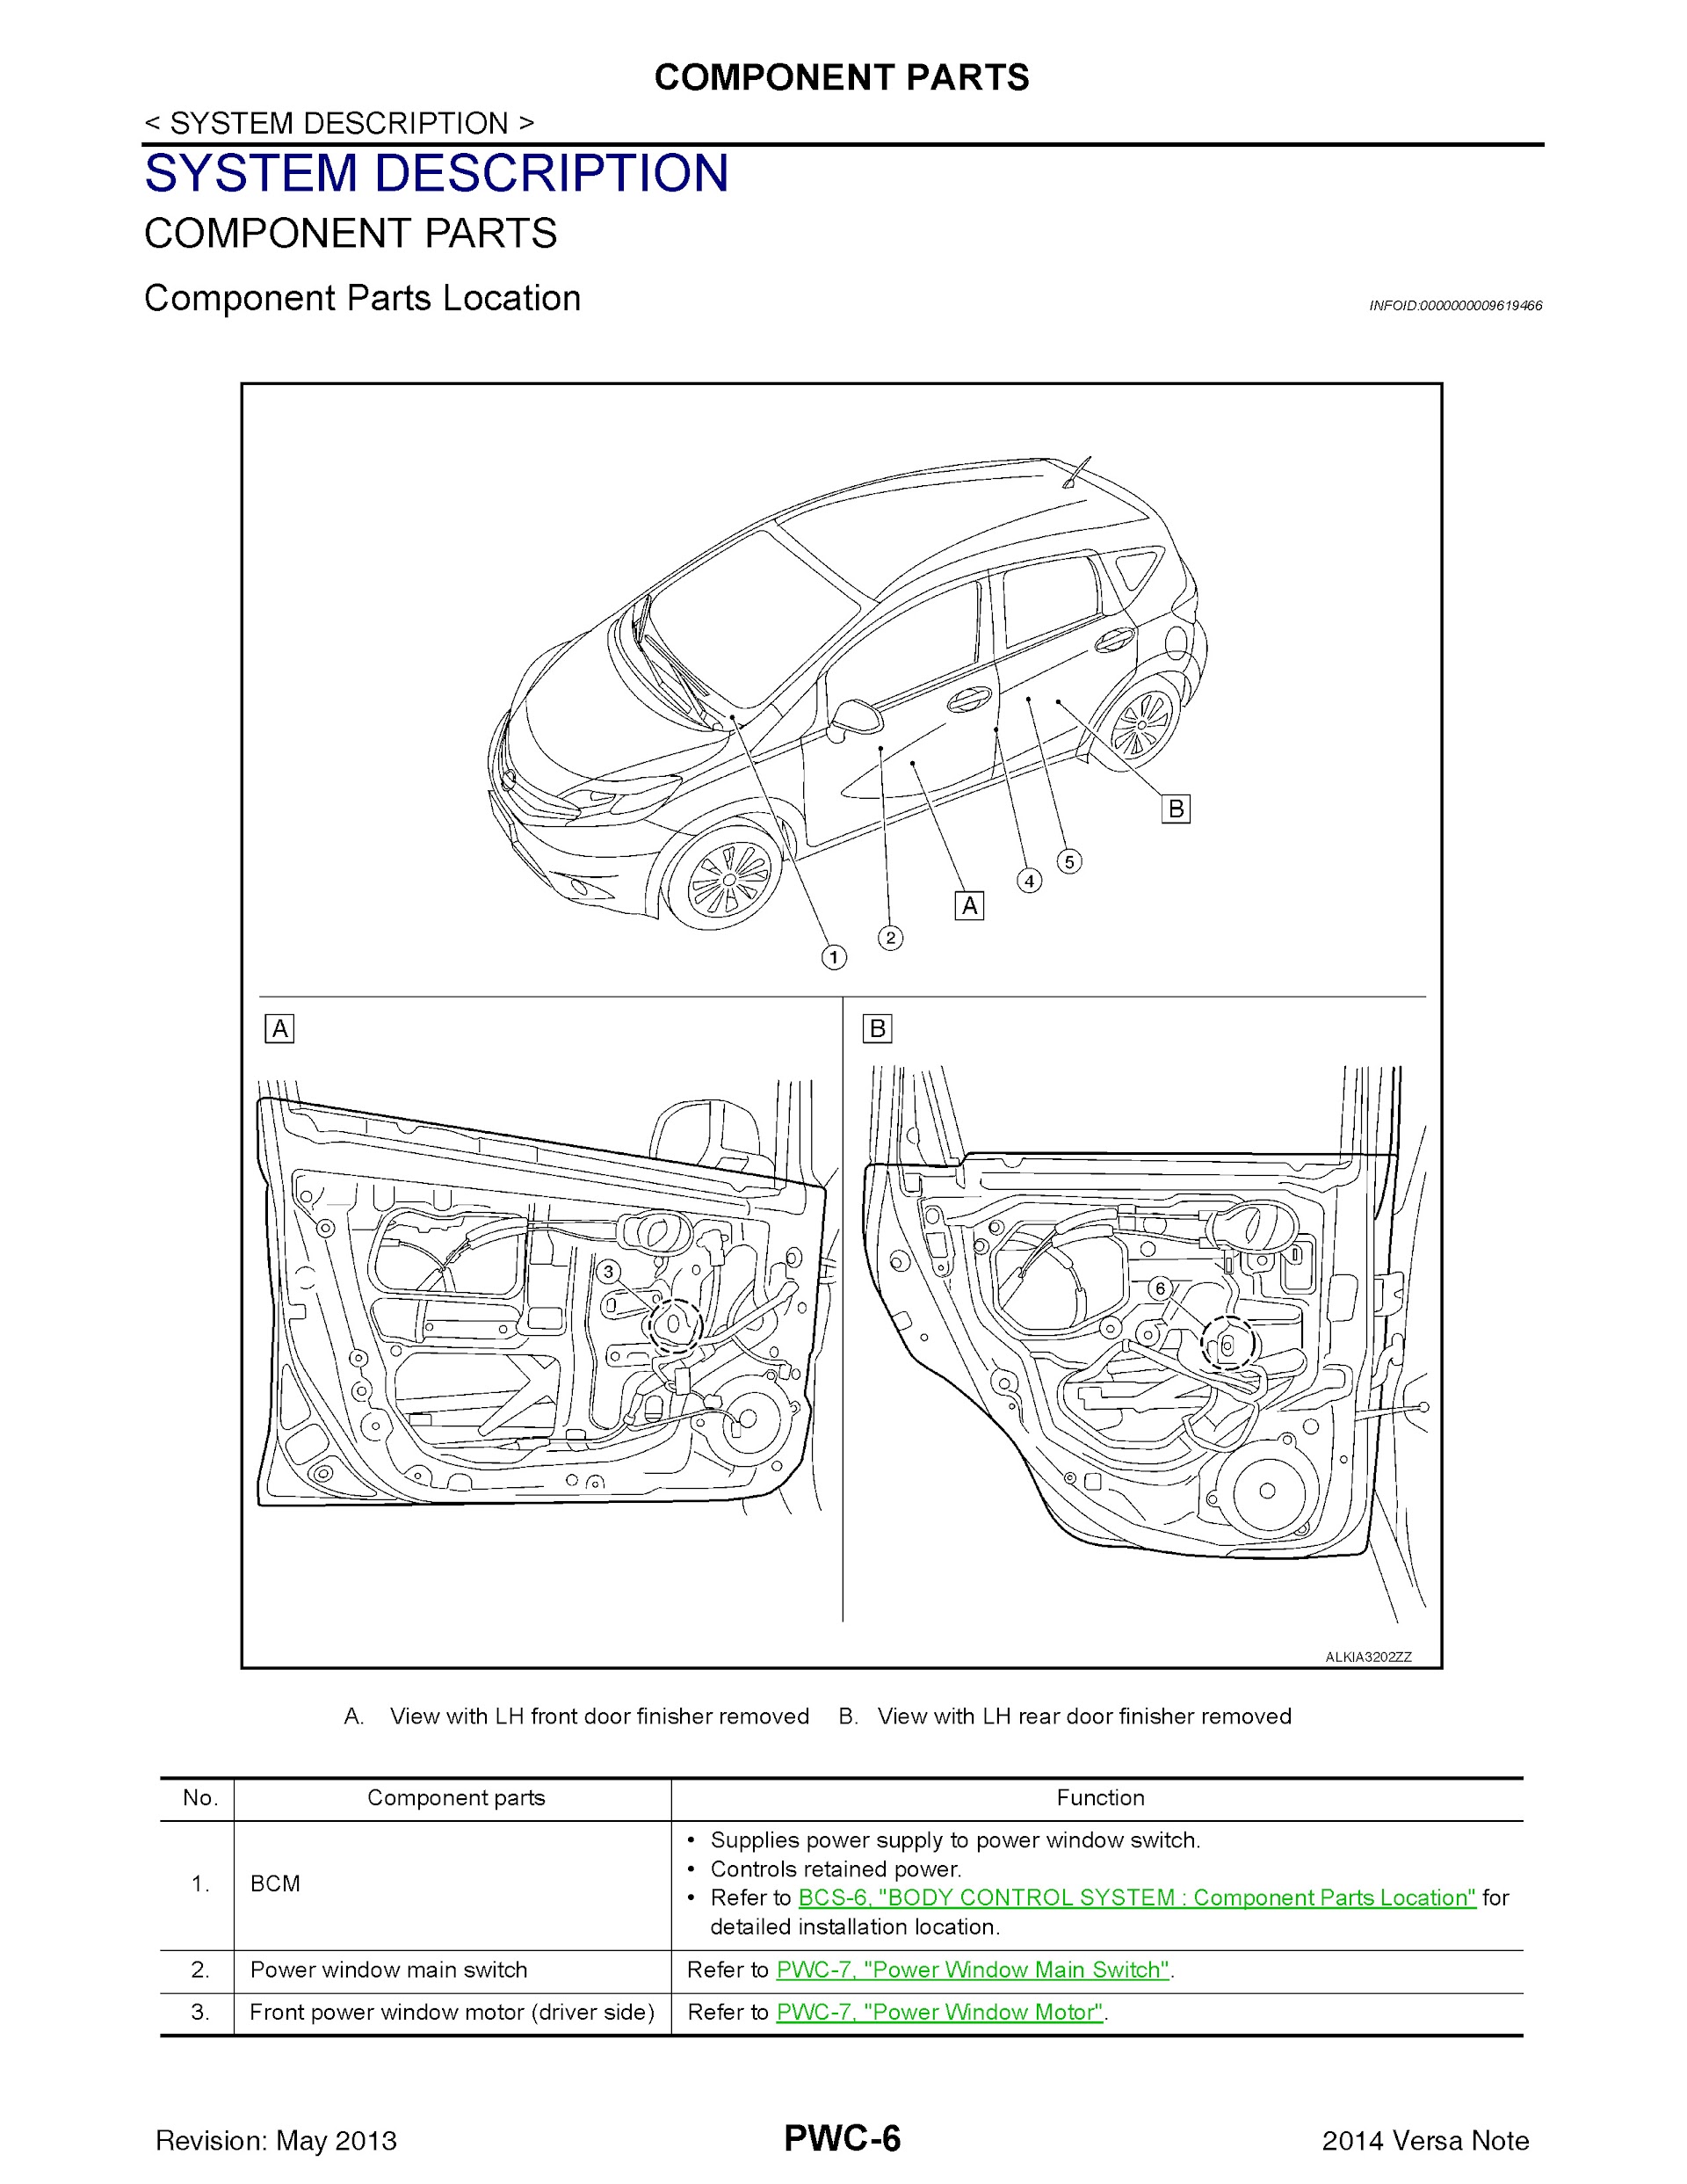 2014 Nissan Versa Note Repair Manual, System Description Component Parts